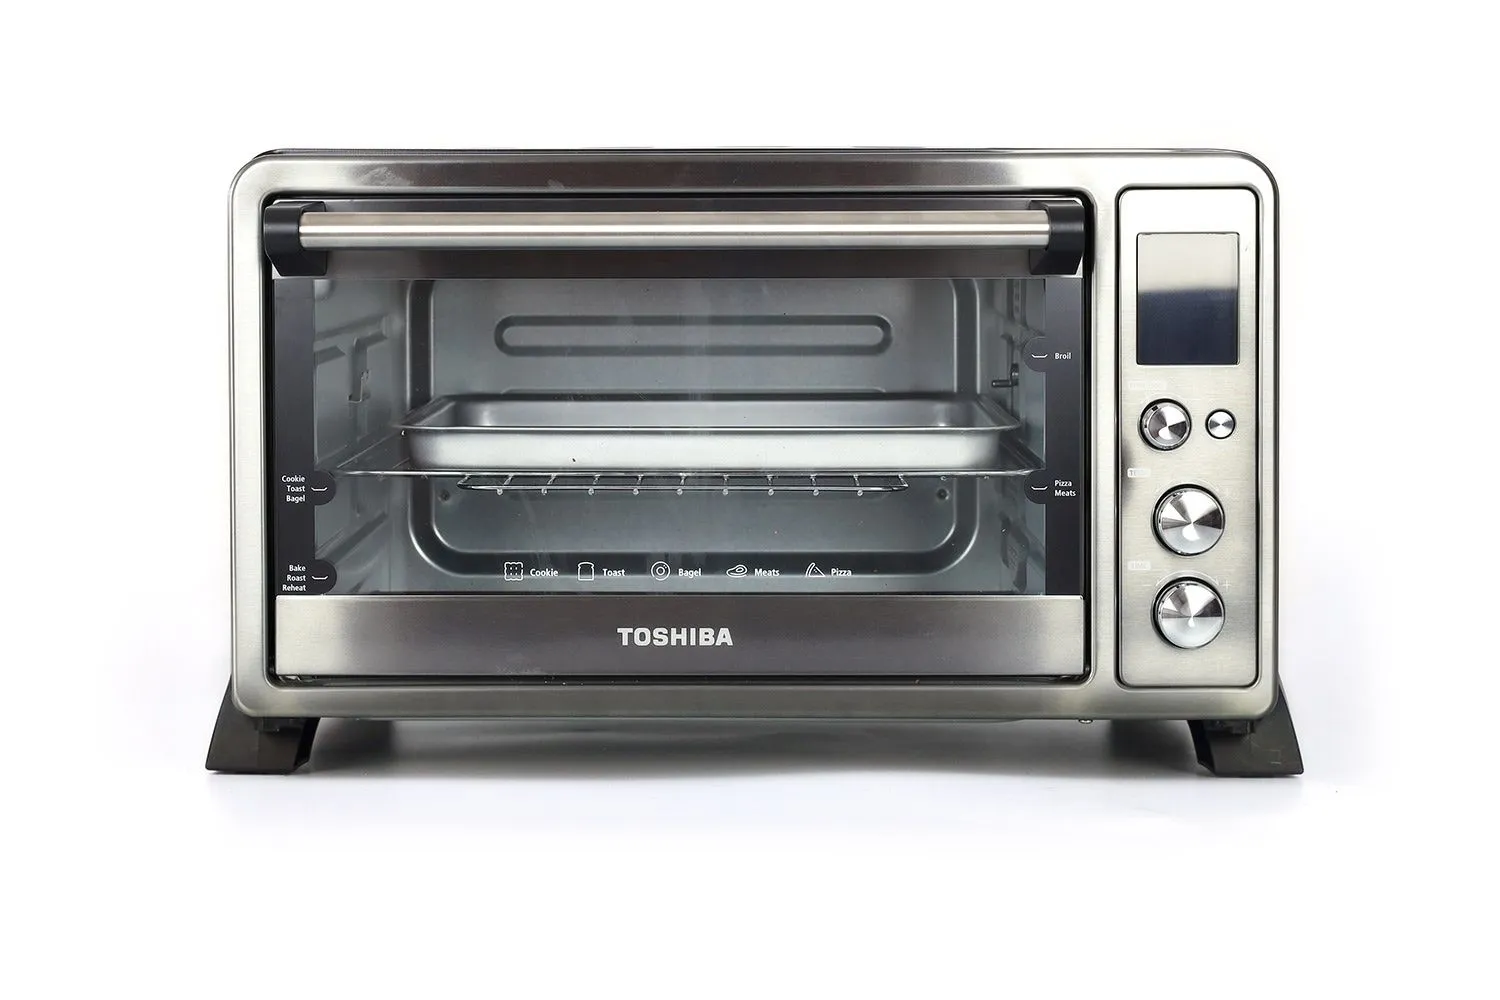 Toshiba 4-Slice Stainless Steel Toaster Oven